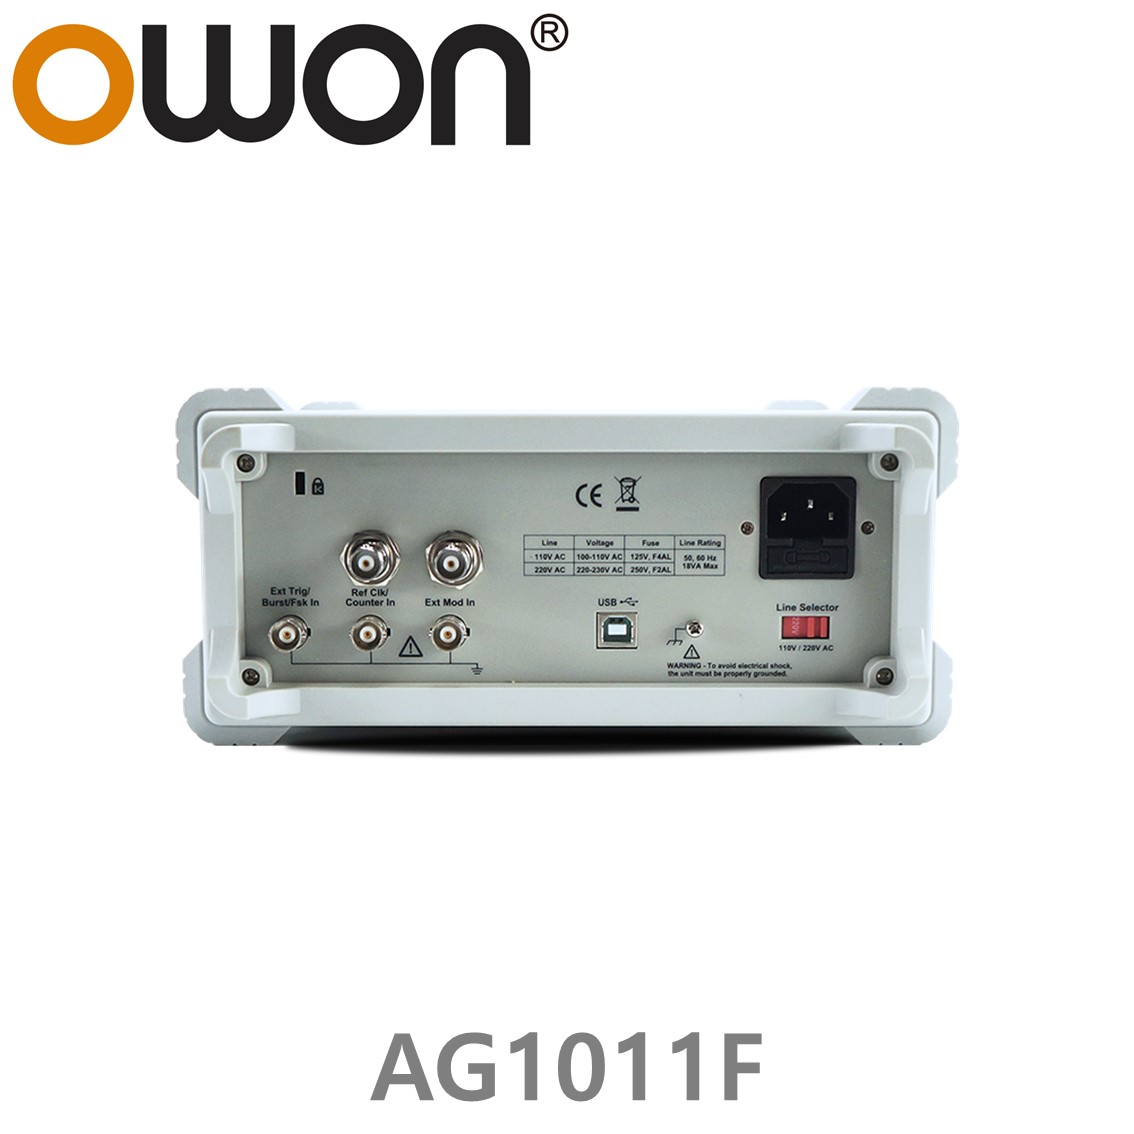 [ OWON ] AG1011F 임의 파형발생기 1CH, 10MHz, 125MS/s, 포괄적 변조, AM, FM, PM, FSK